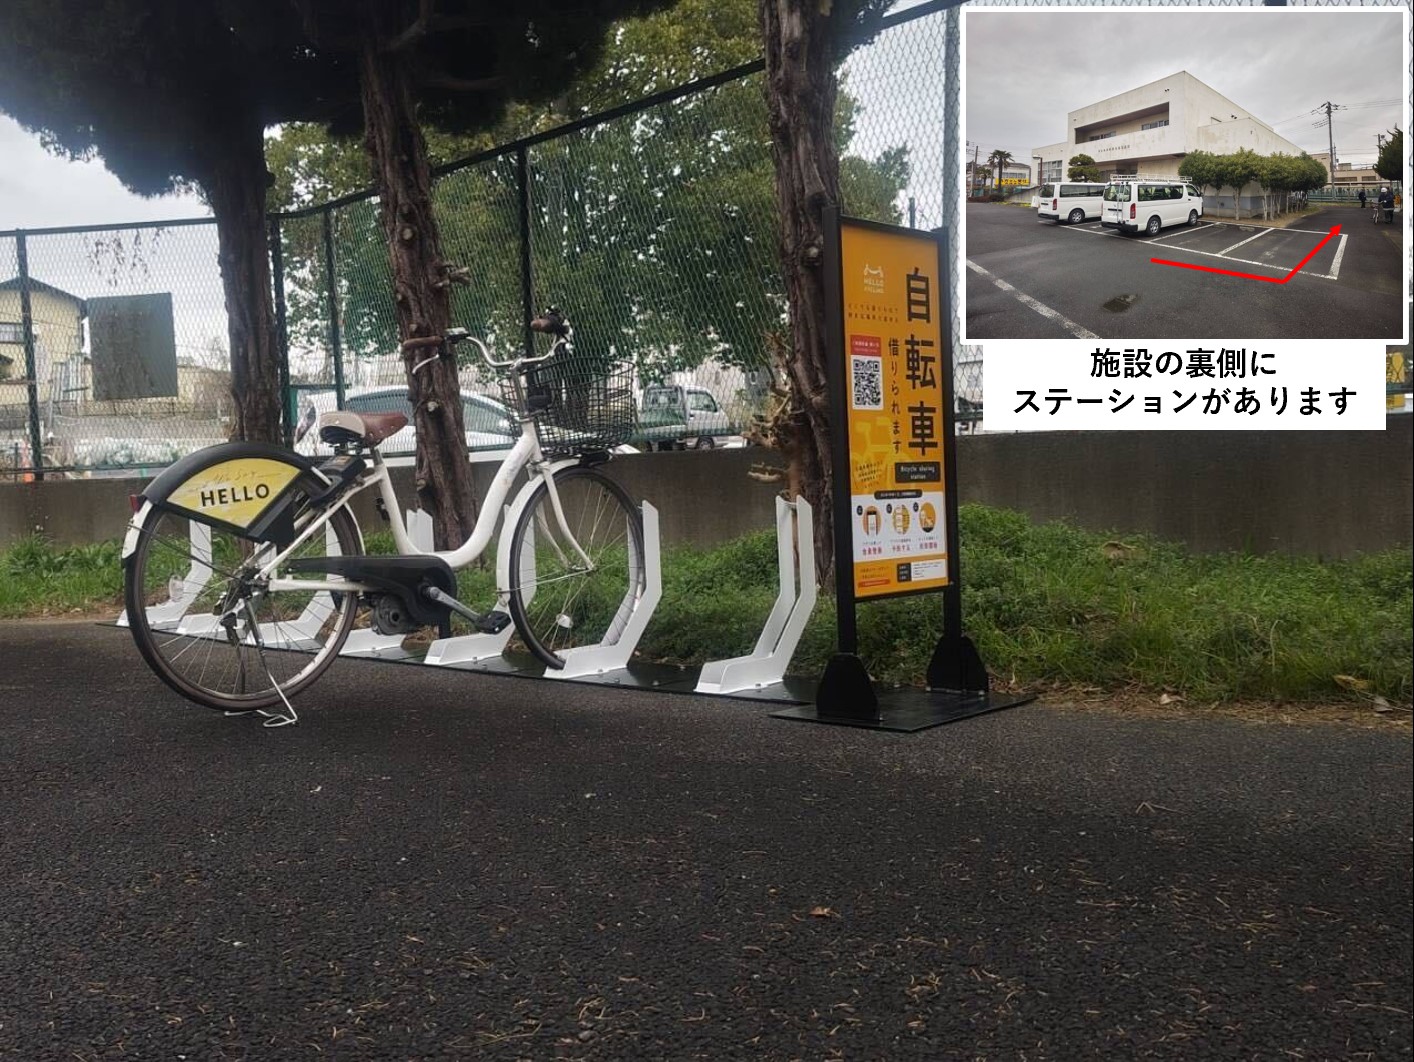 七里公民館 (HELLO CYCLING ポート)の画像1